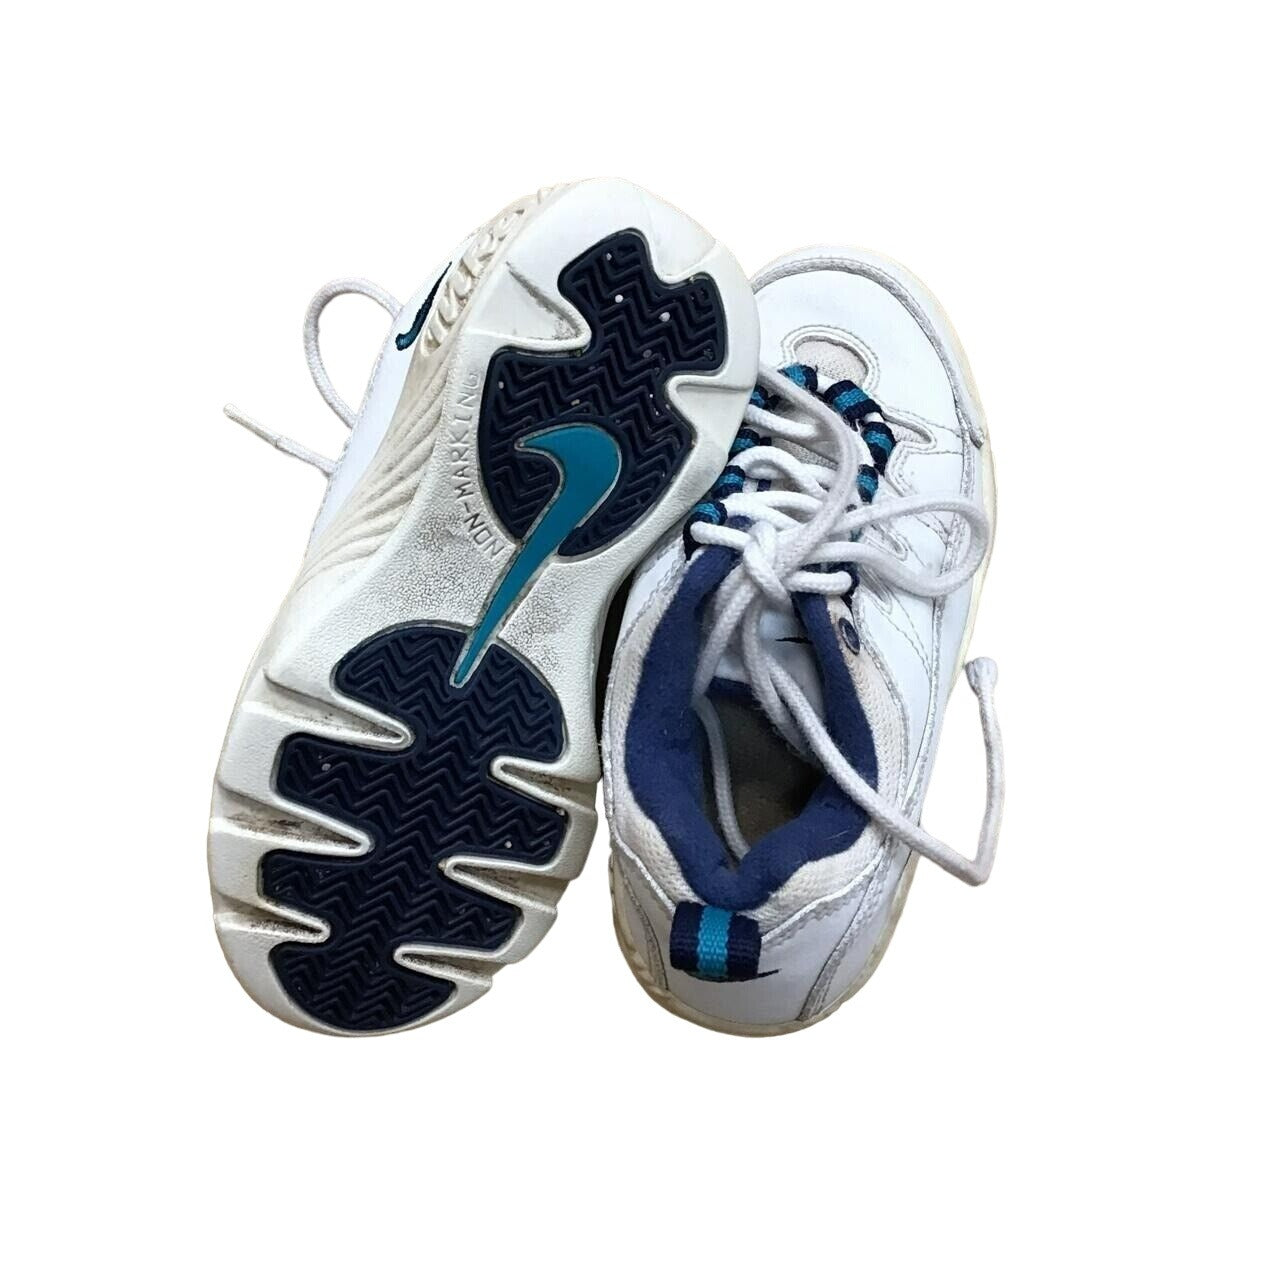 Kids Nike Shoes - 959